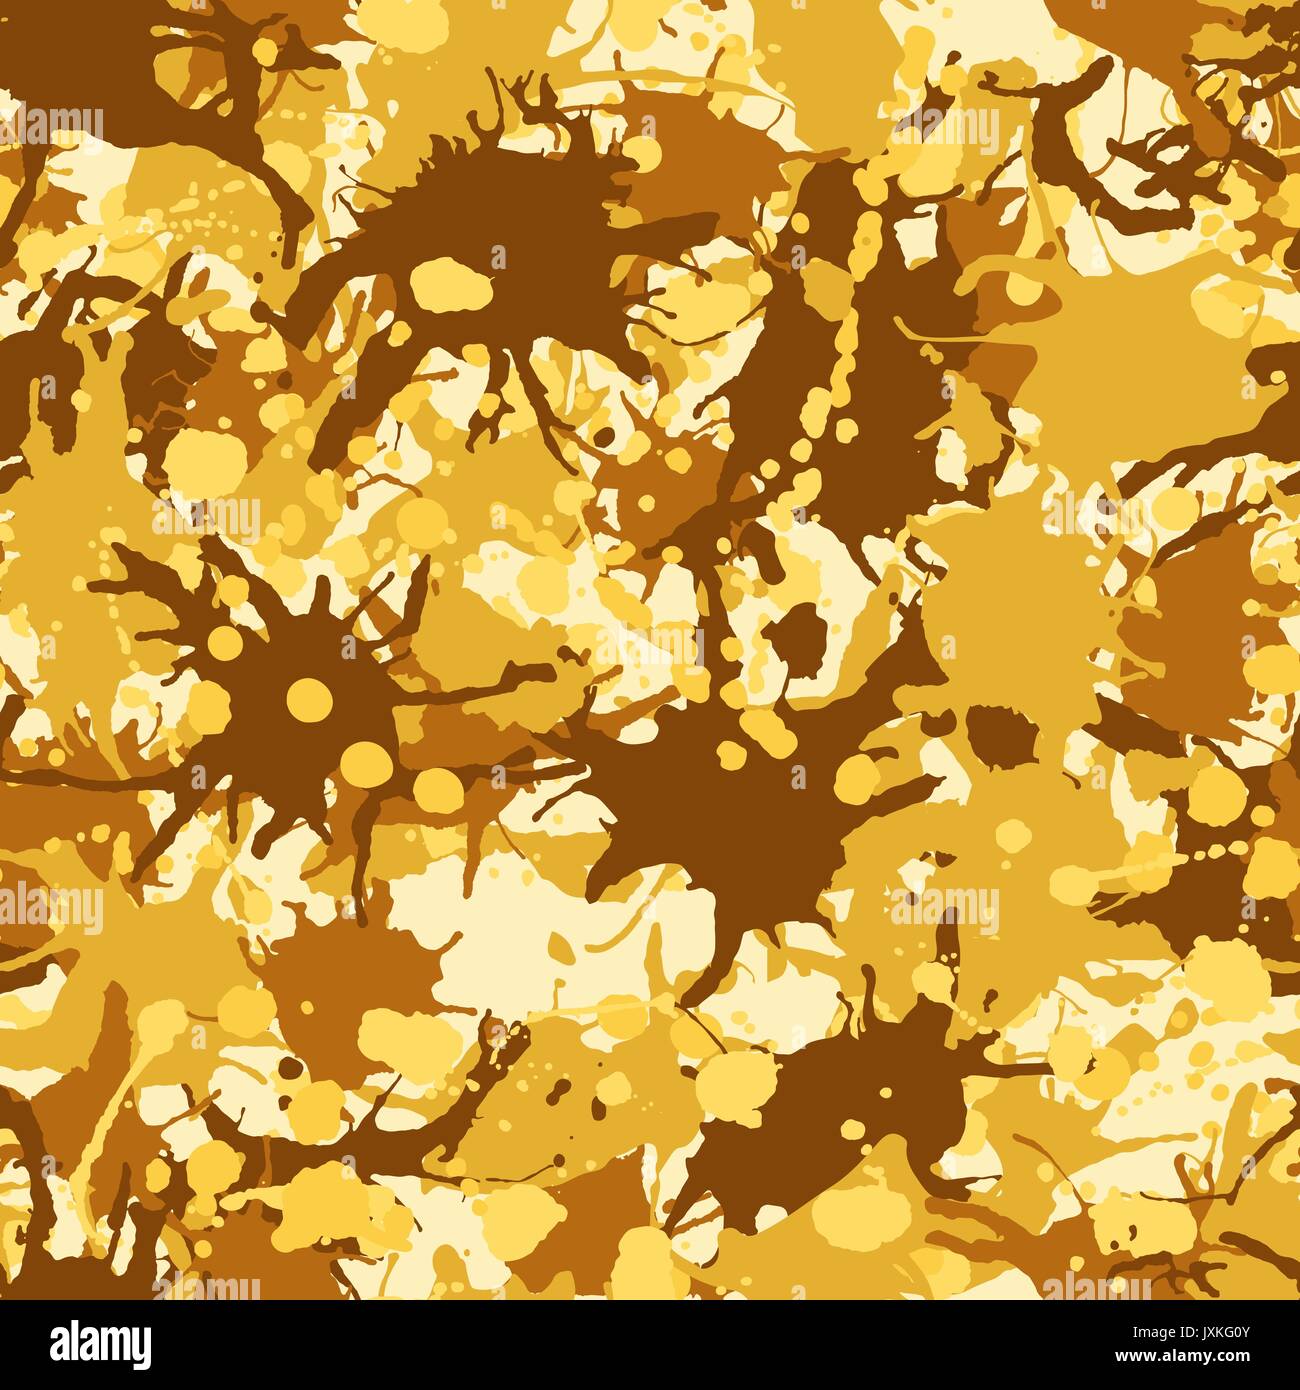 Gelb Braun künstlerische Tinte Farbe spritzt nahtlose Muster Vektor Stock Vektor